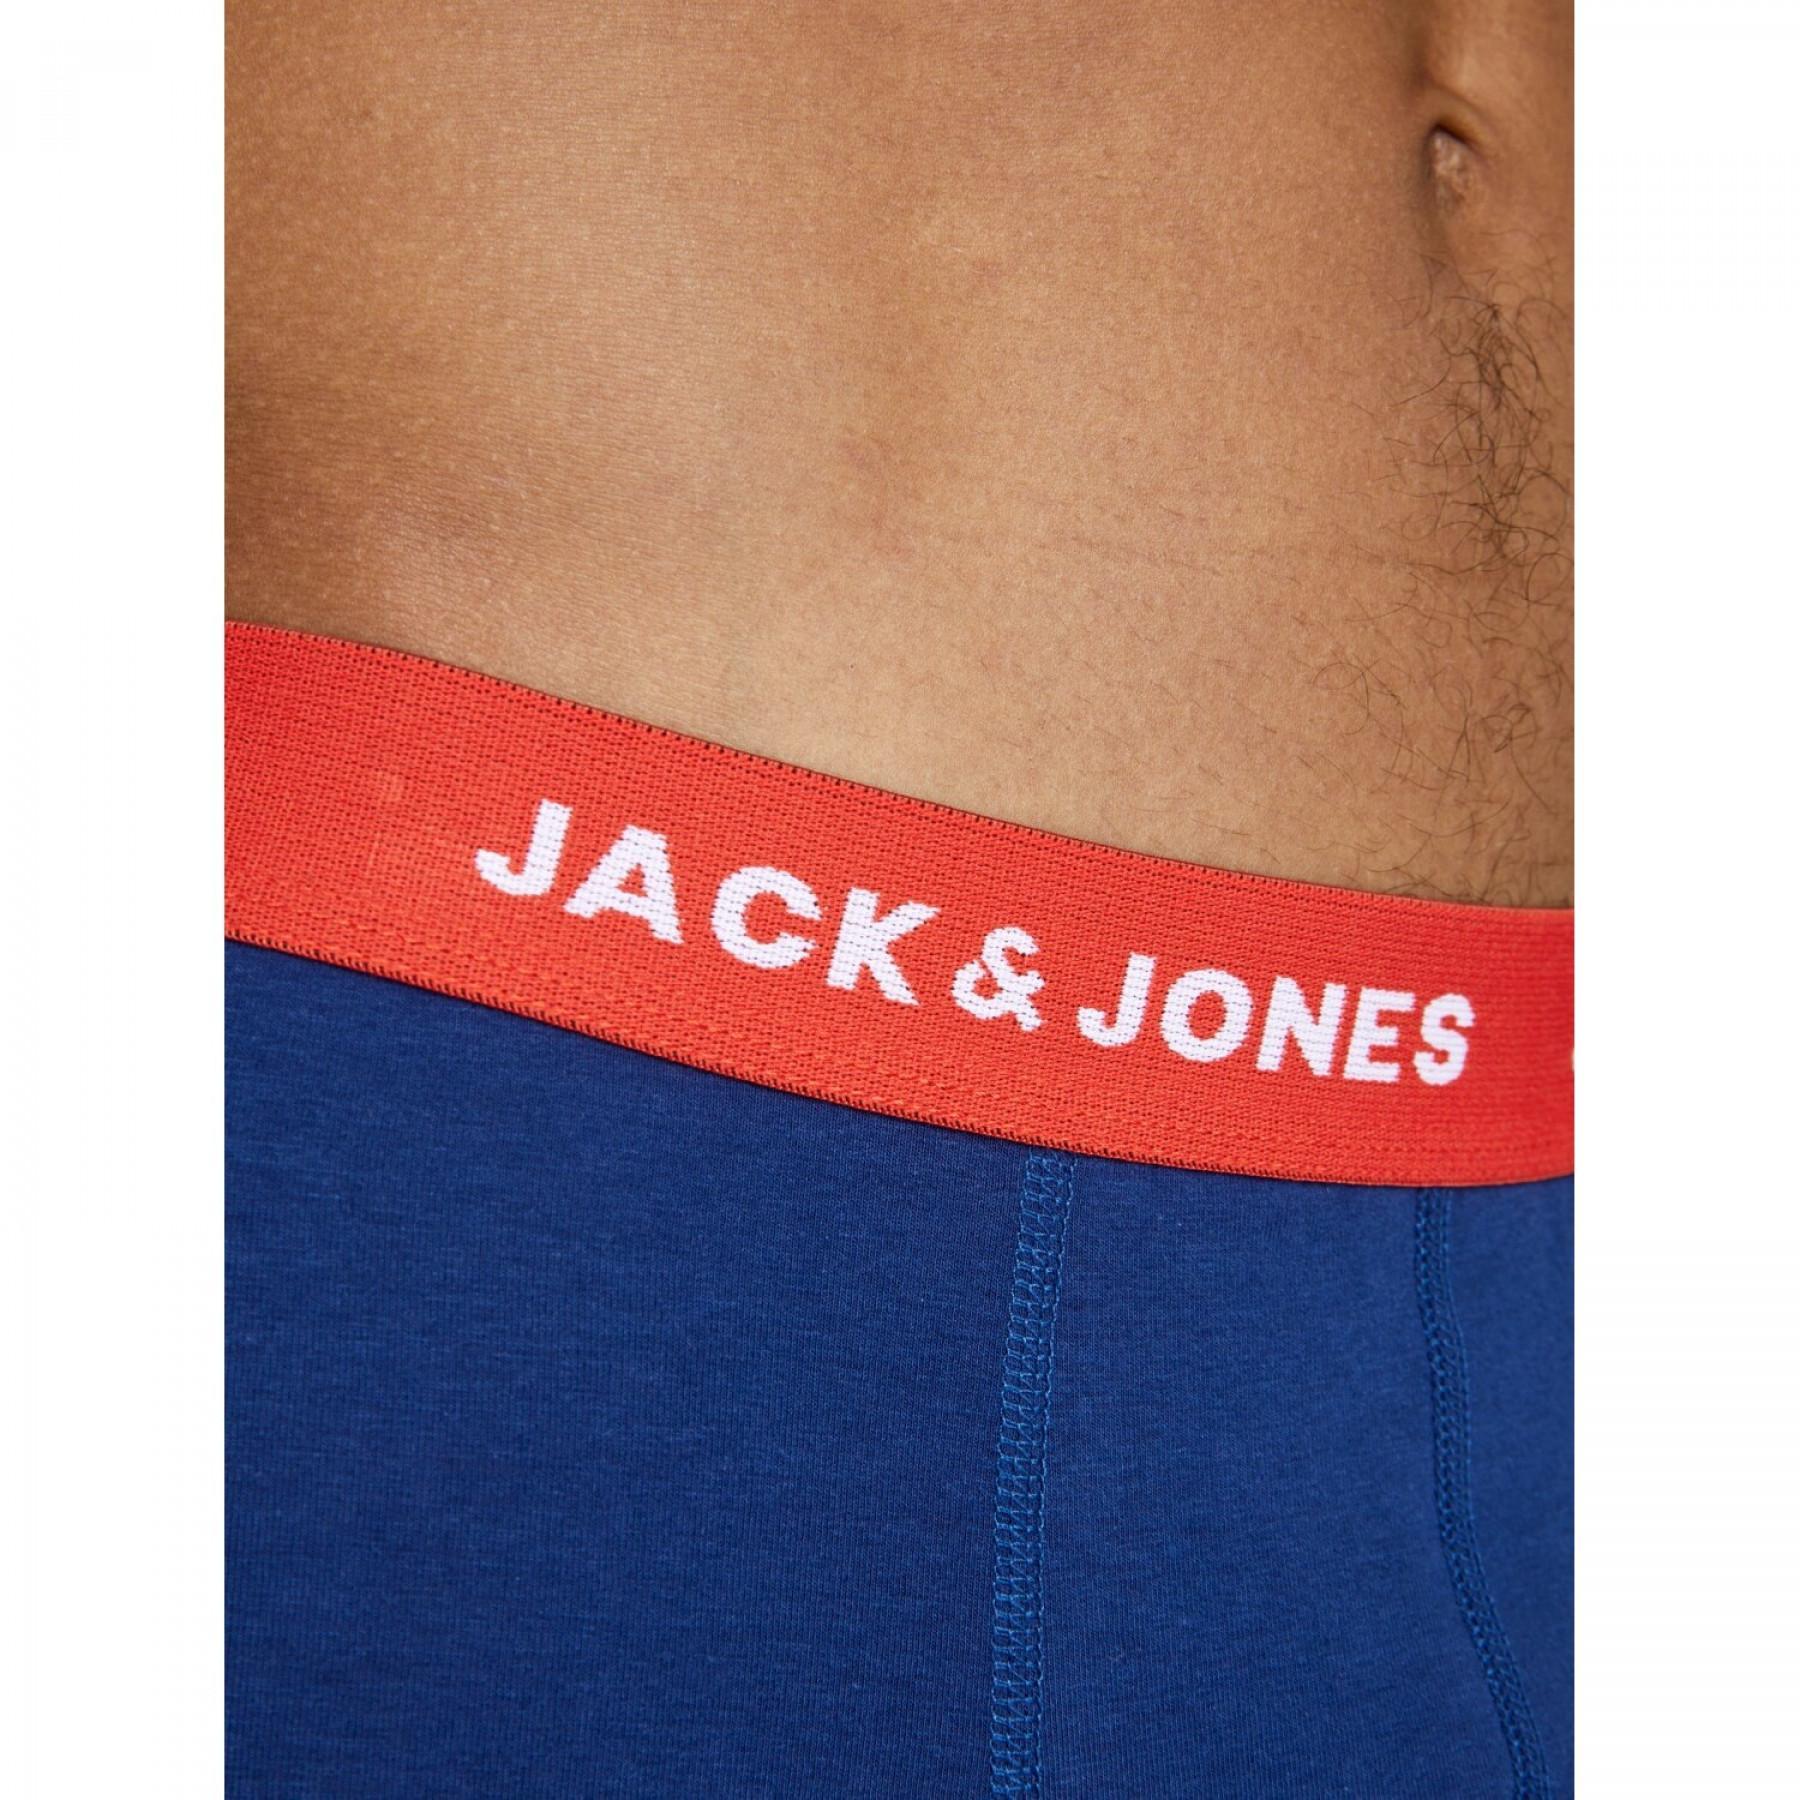 Set van 5 boxershorts Jack & Jones Jaclee 5